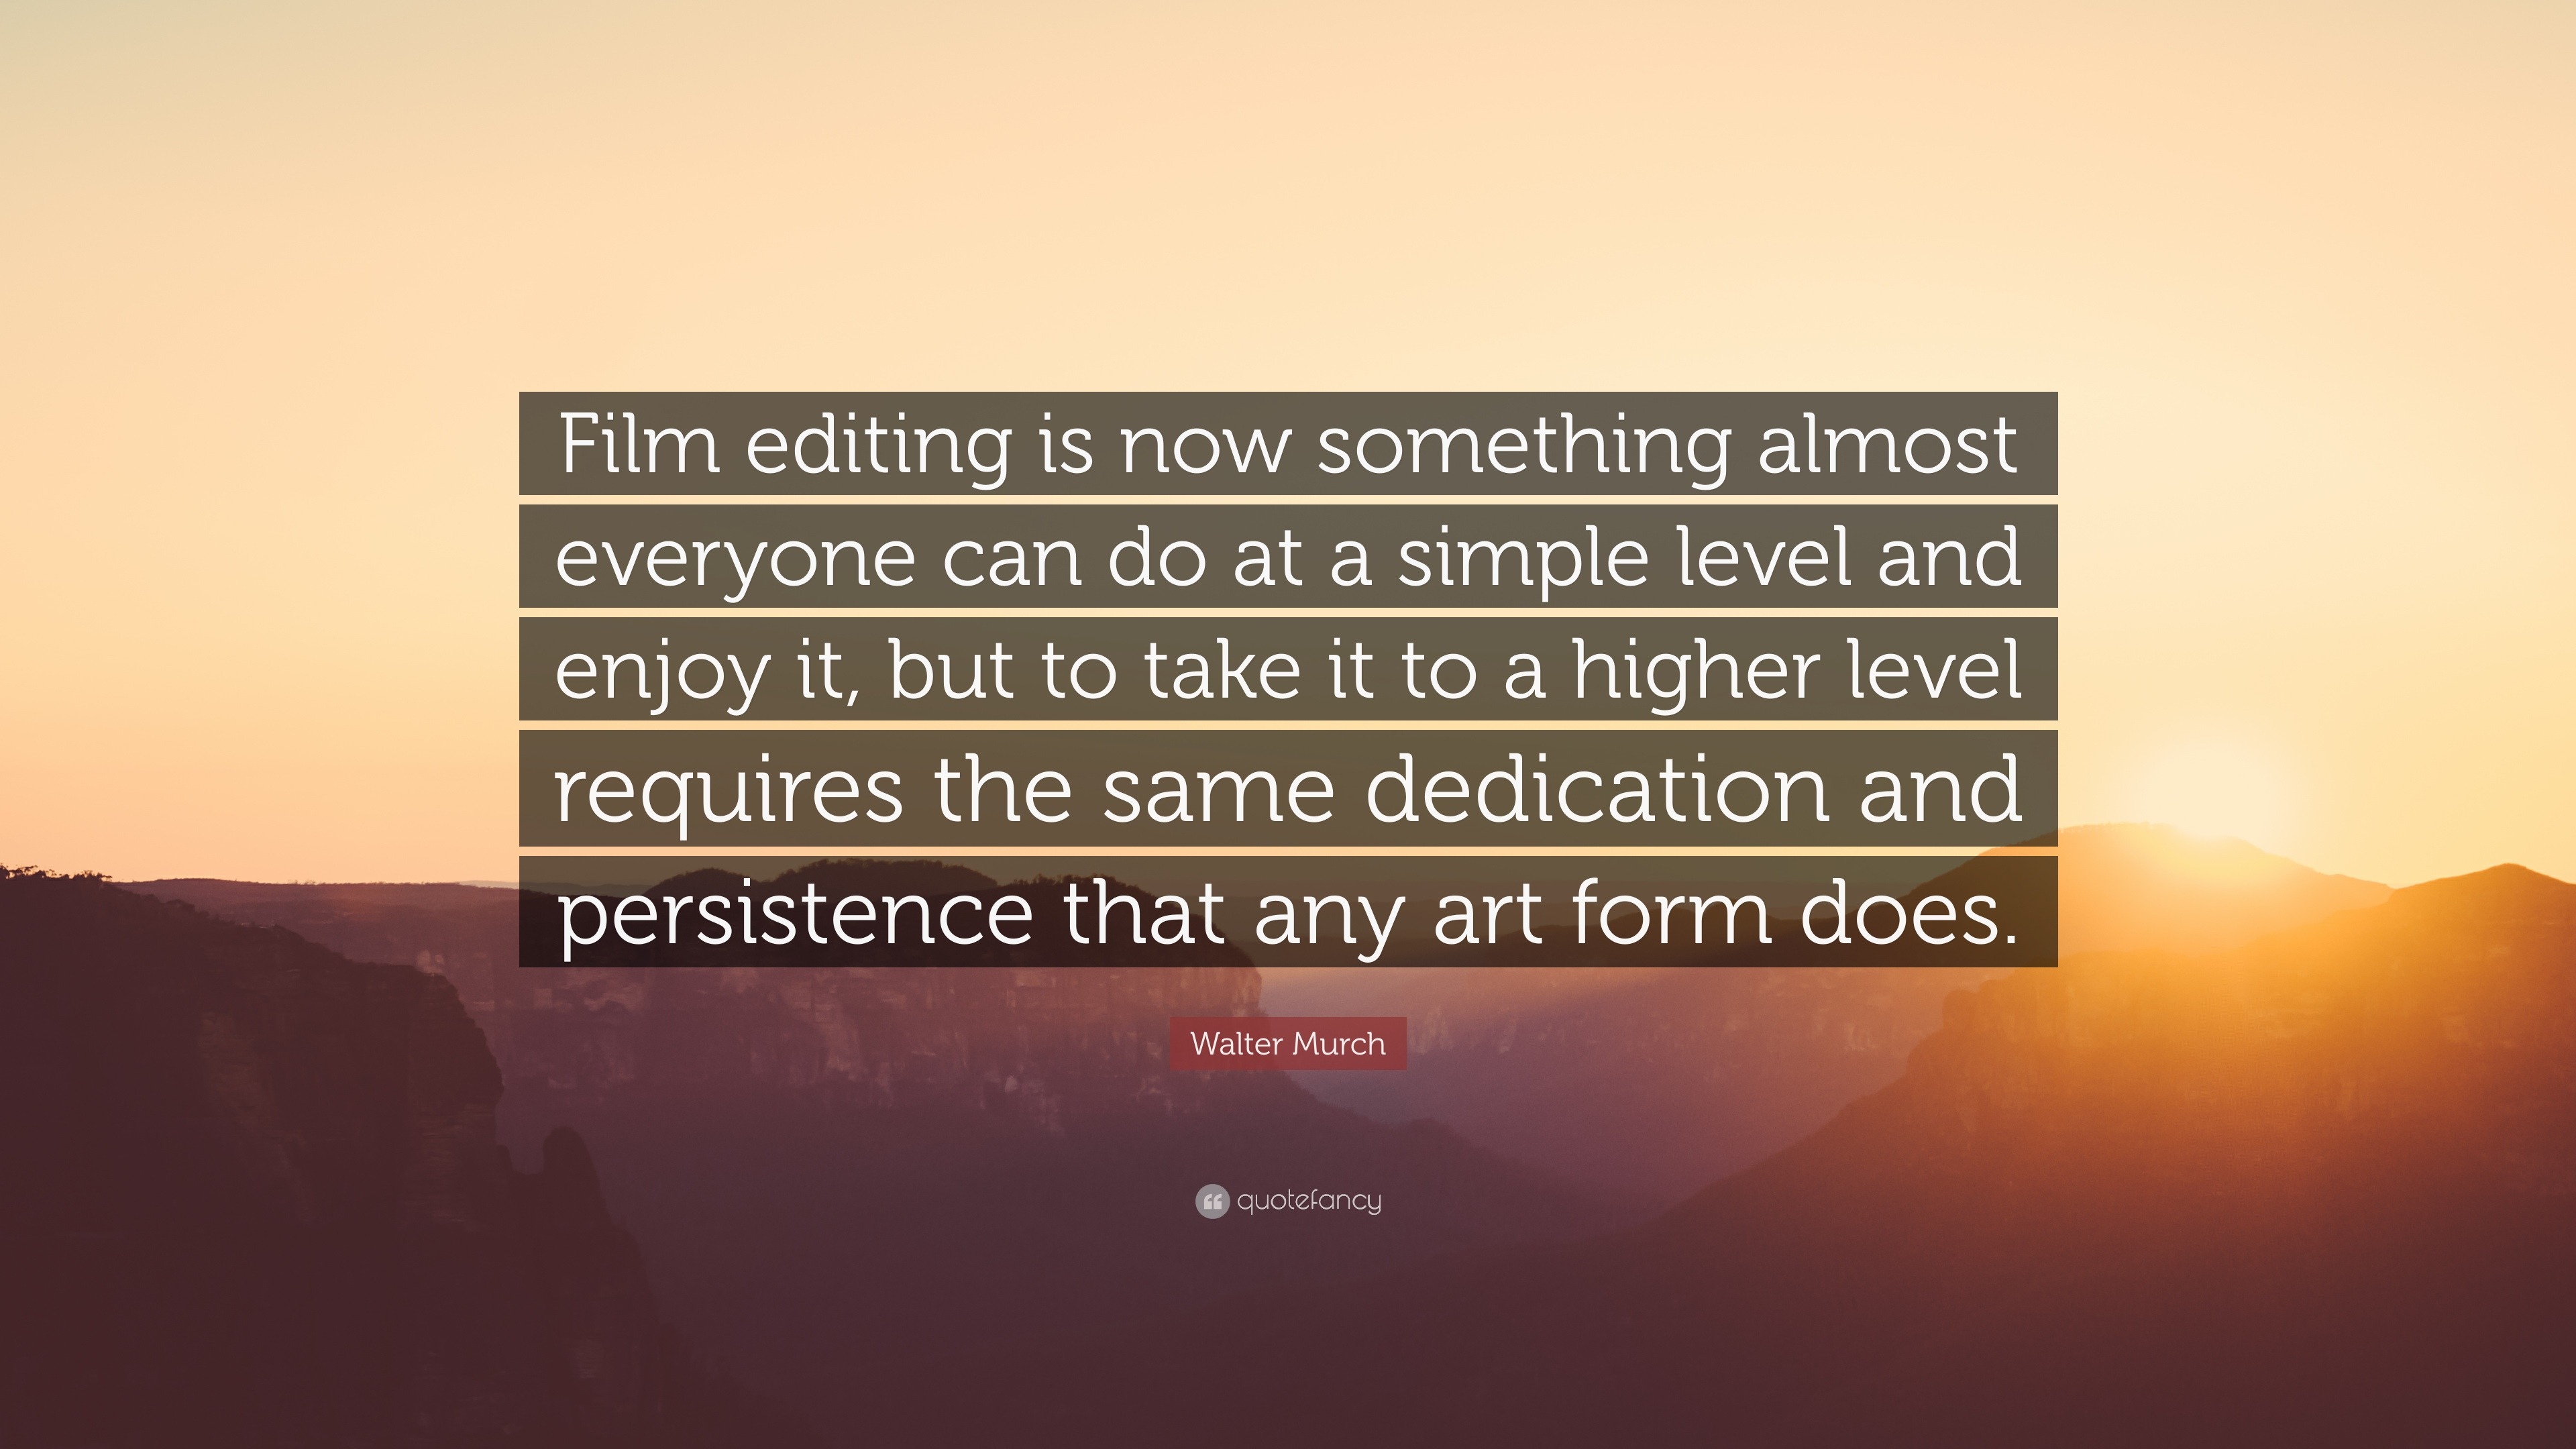 Film editing video editing quotes